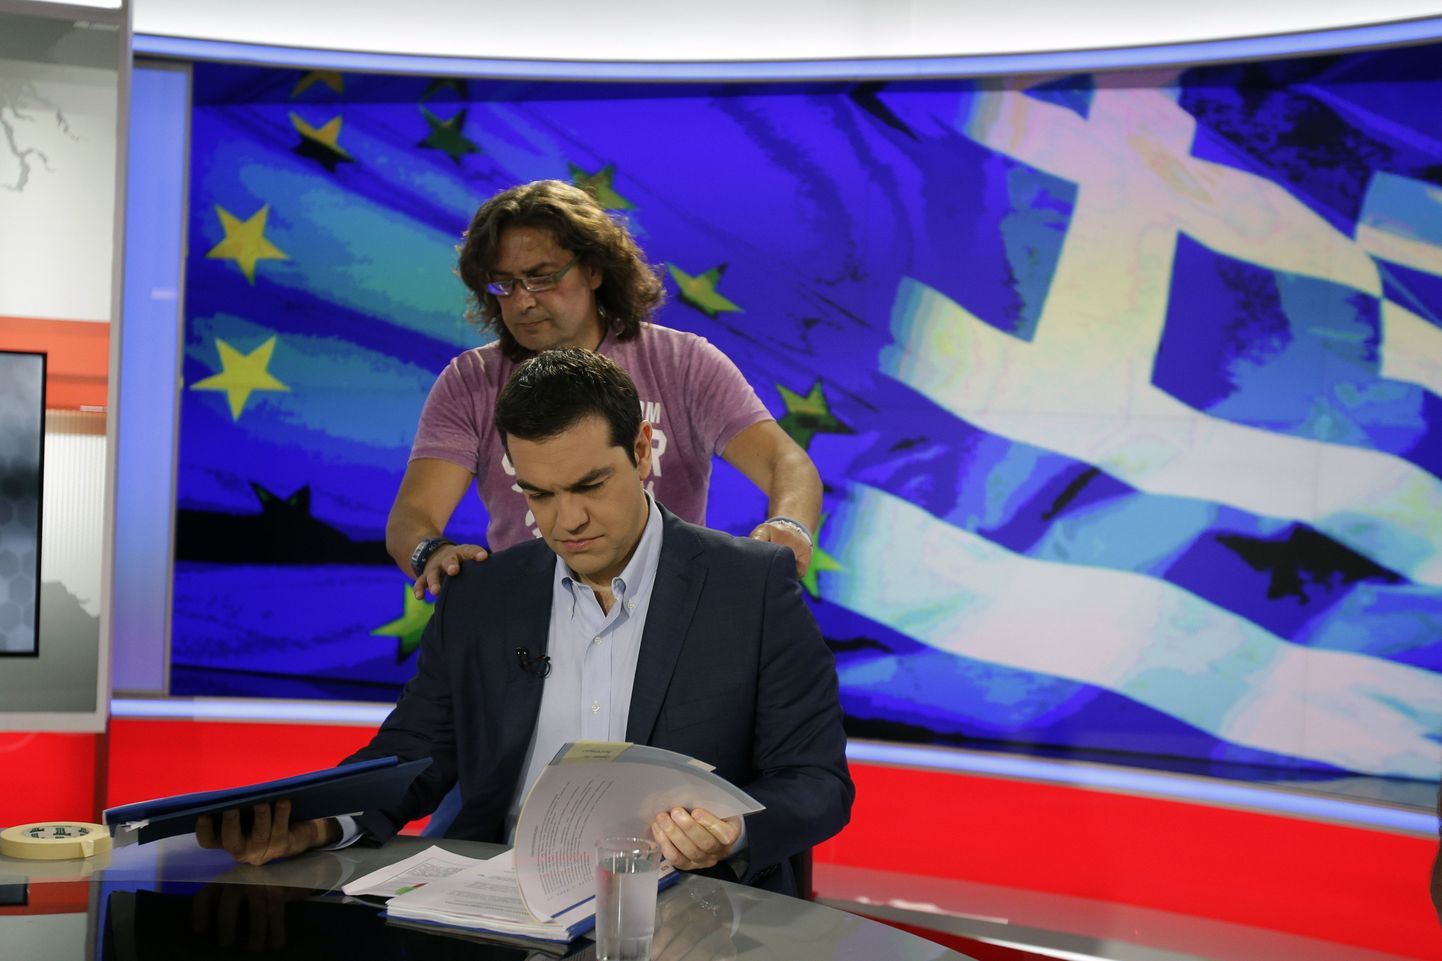 Kreeka peaminister Alexis Tsipras eile enne intervjuud riigi telejaamale.